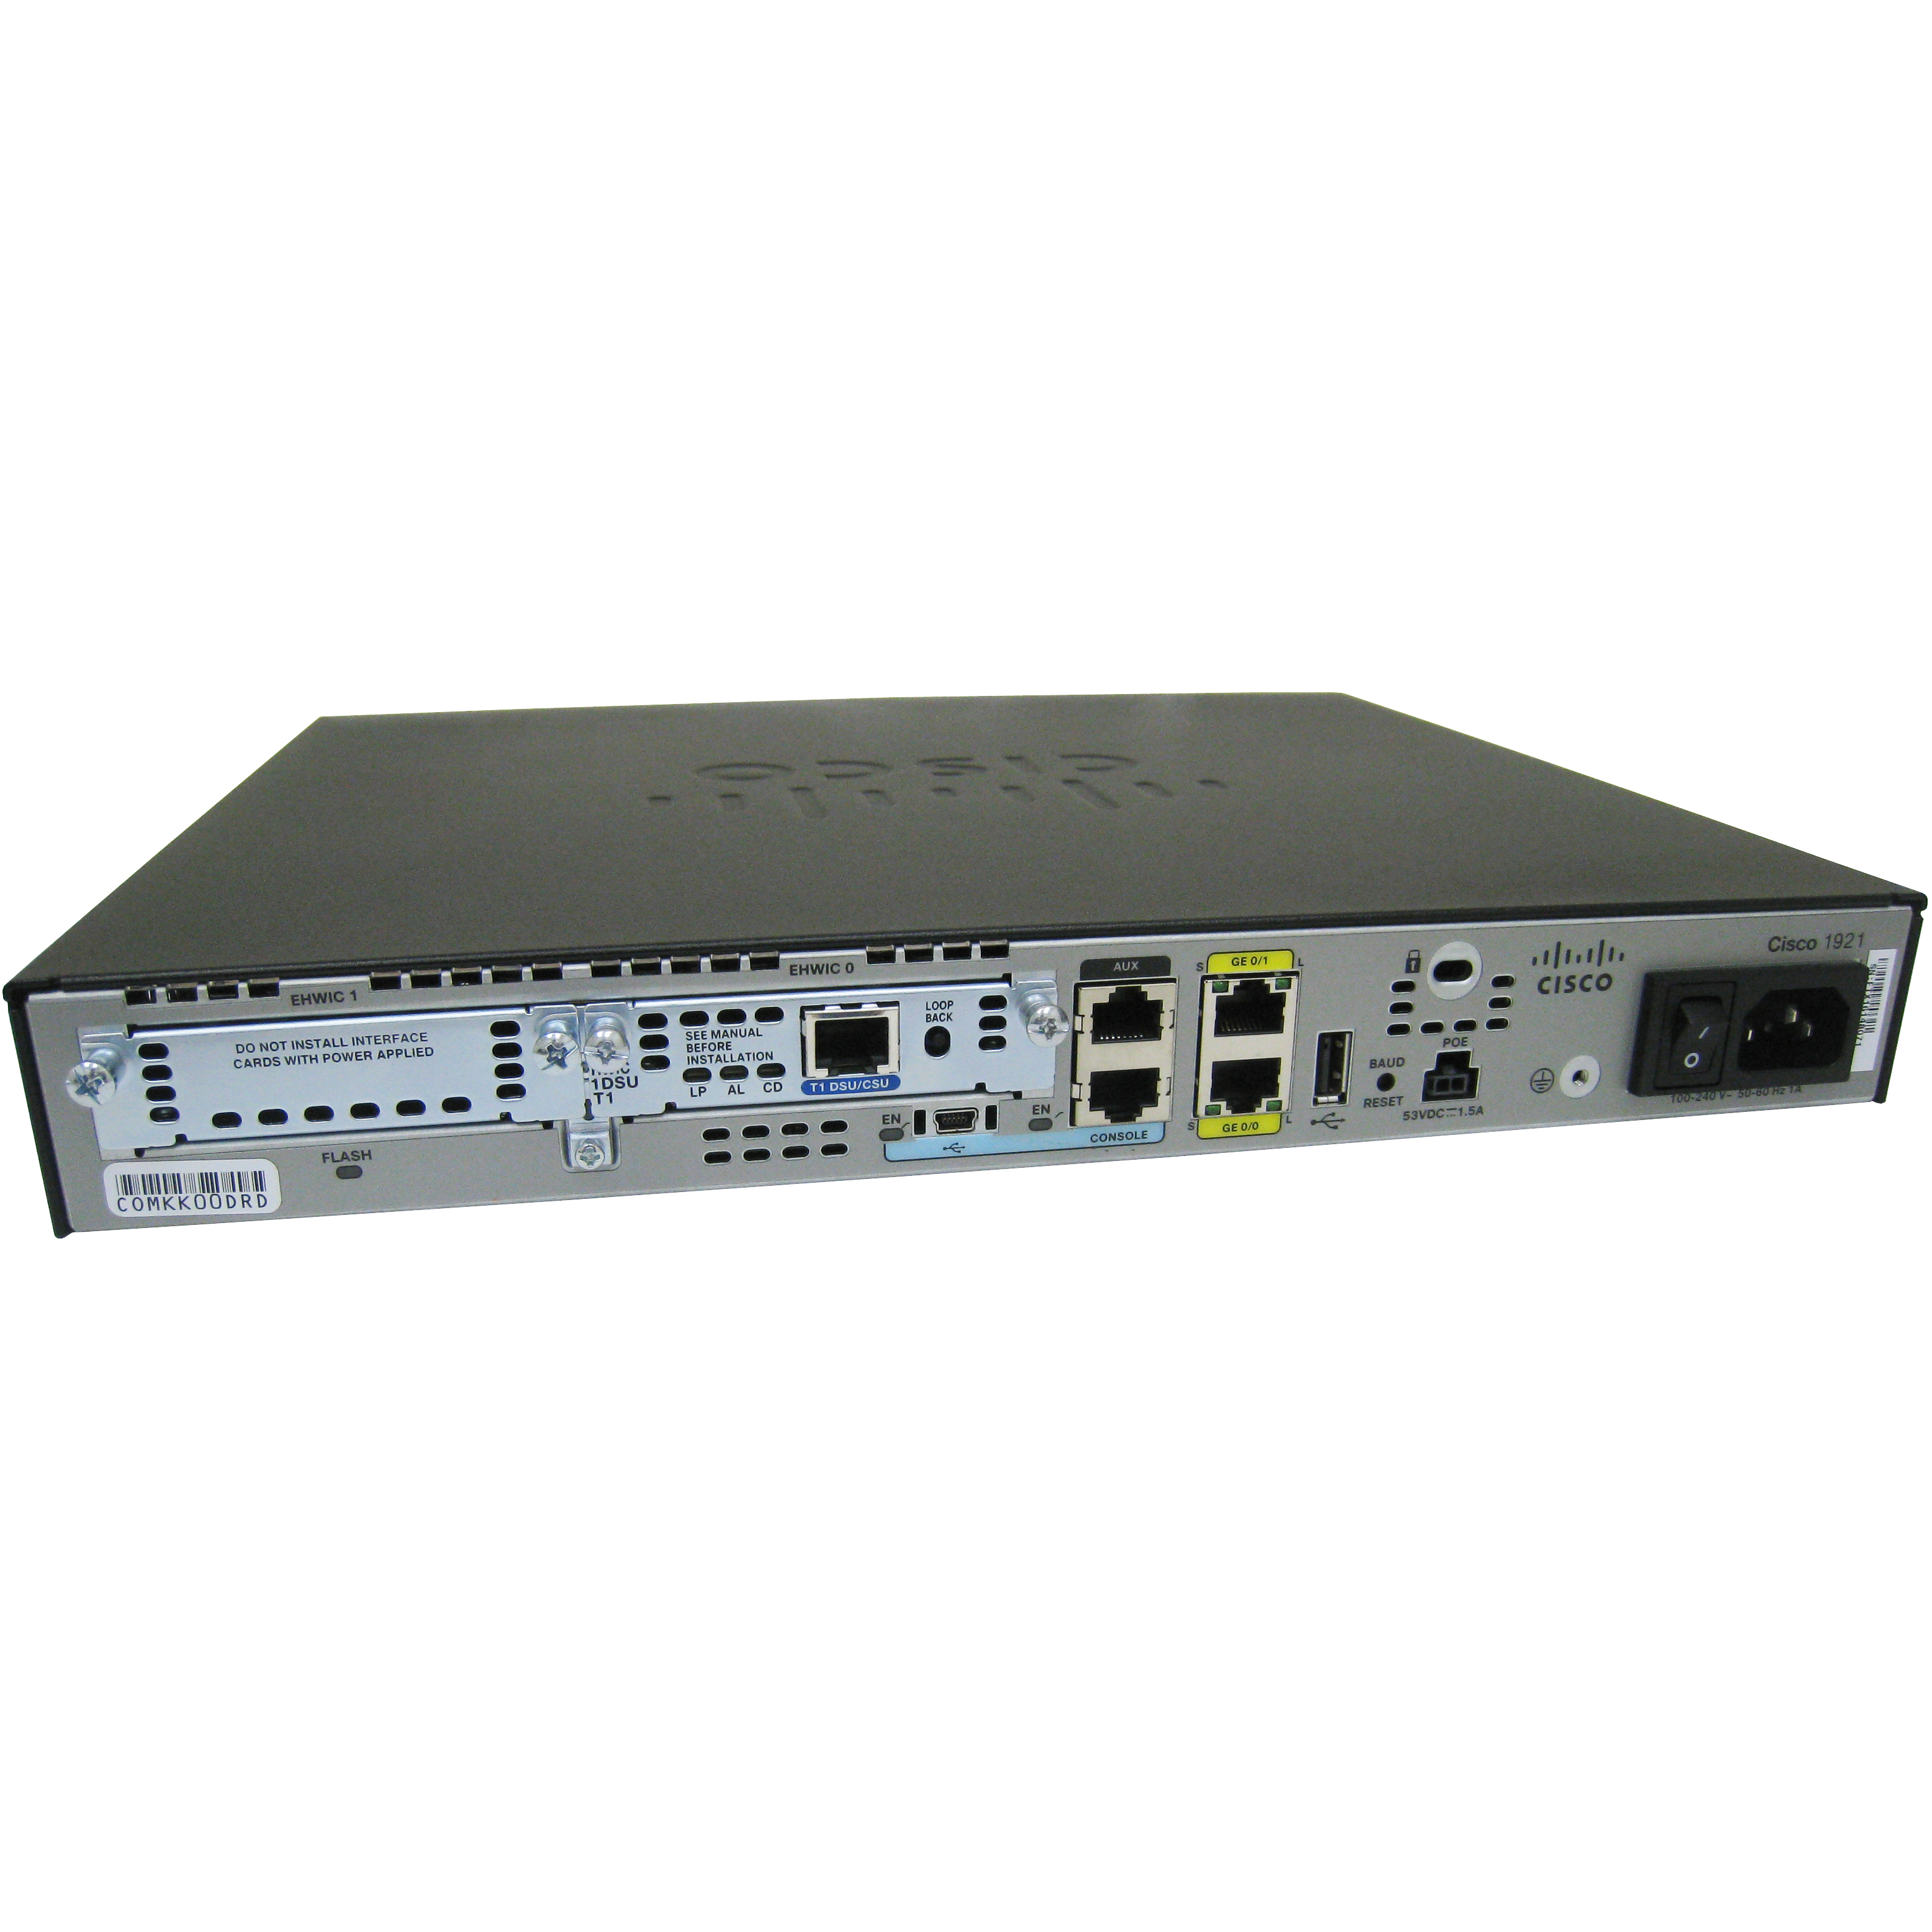 Cisco CISCO1921-T1SEC/K9